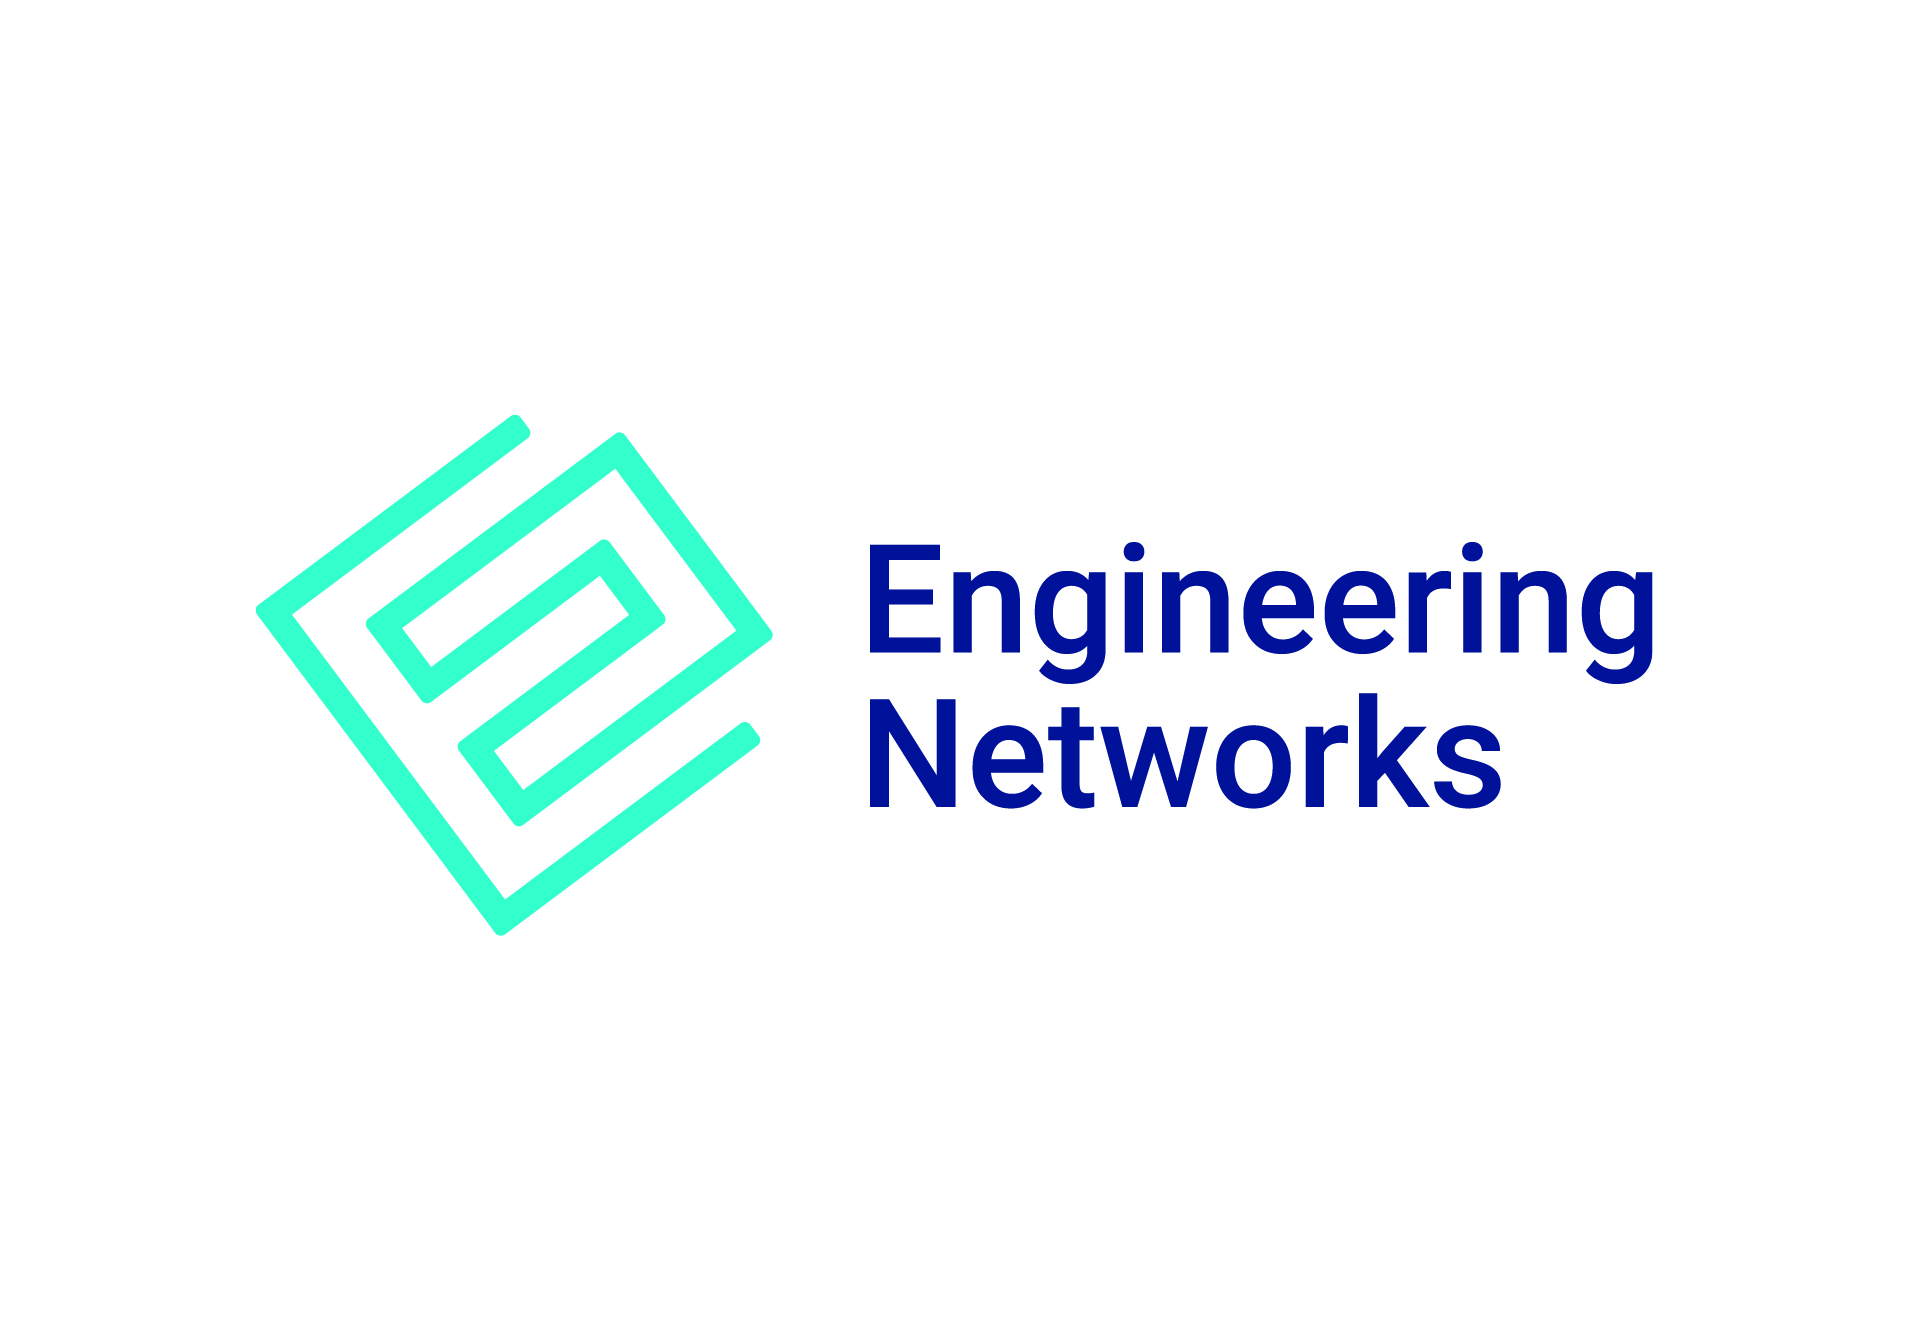 Engineering Networks